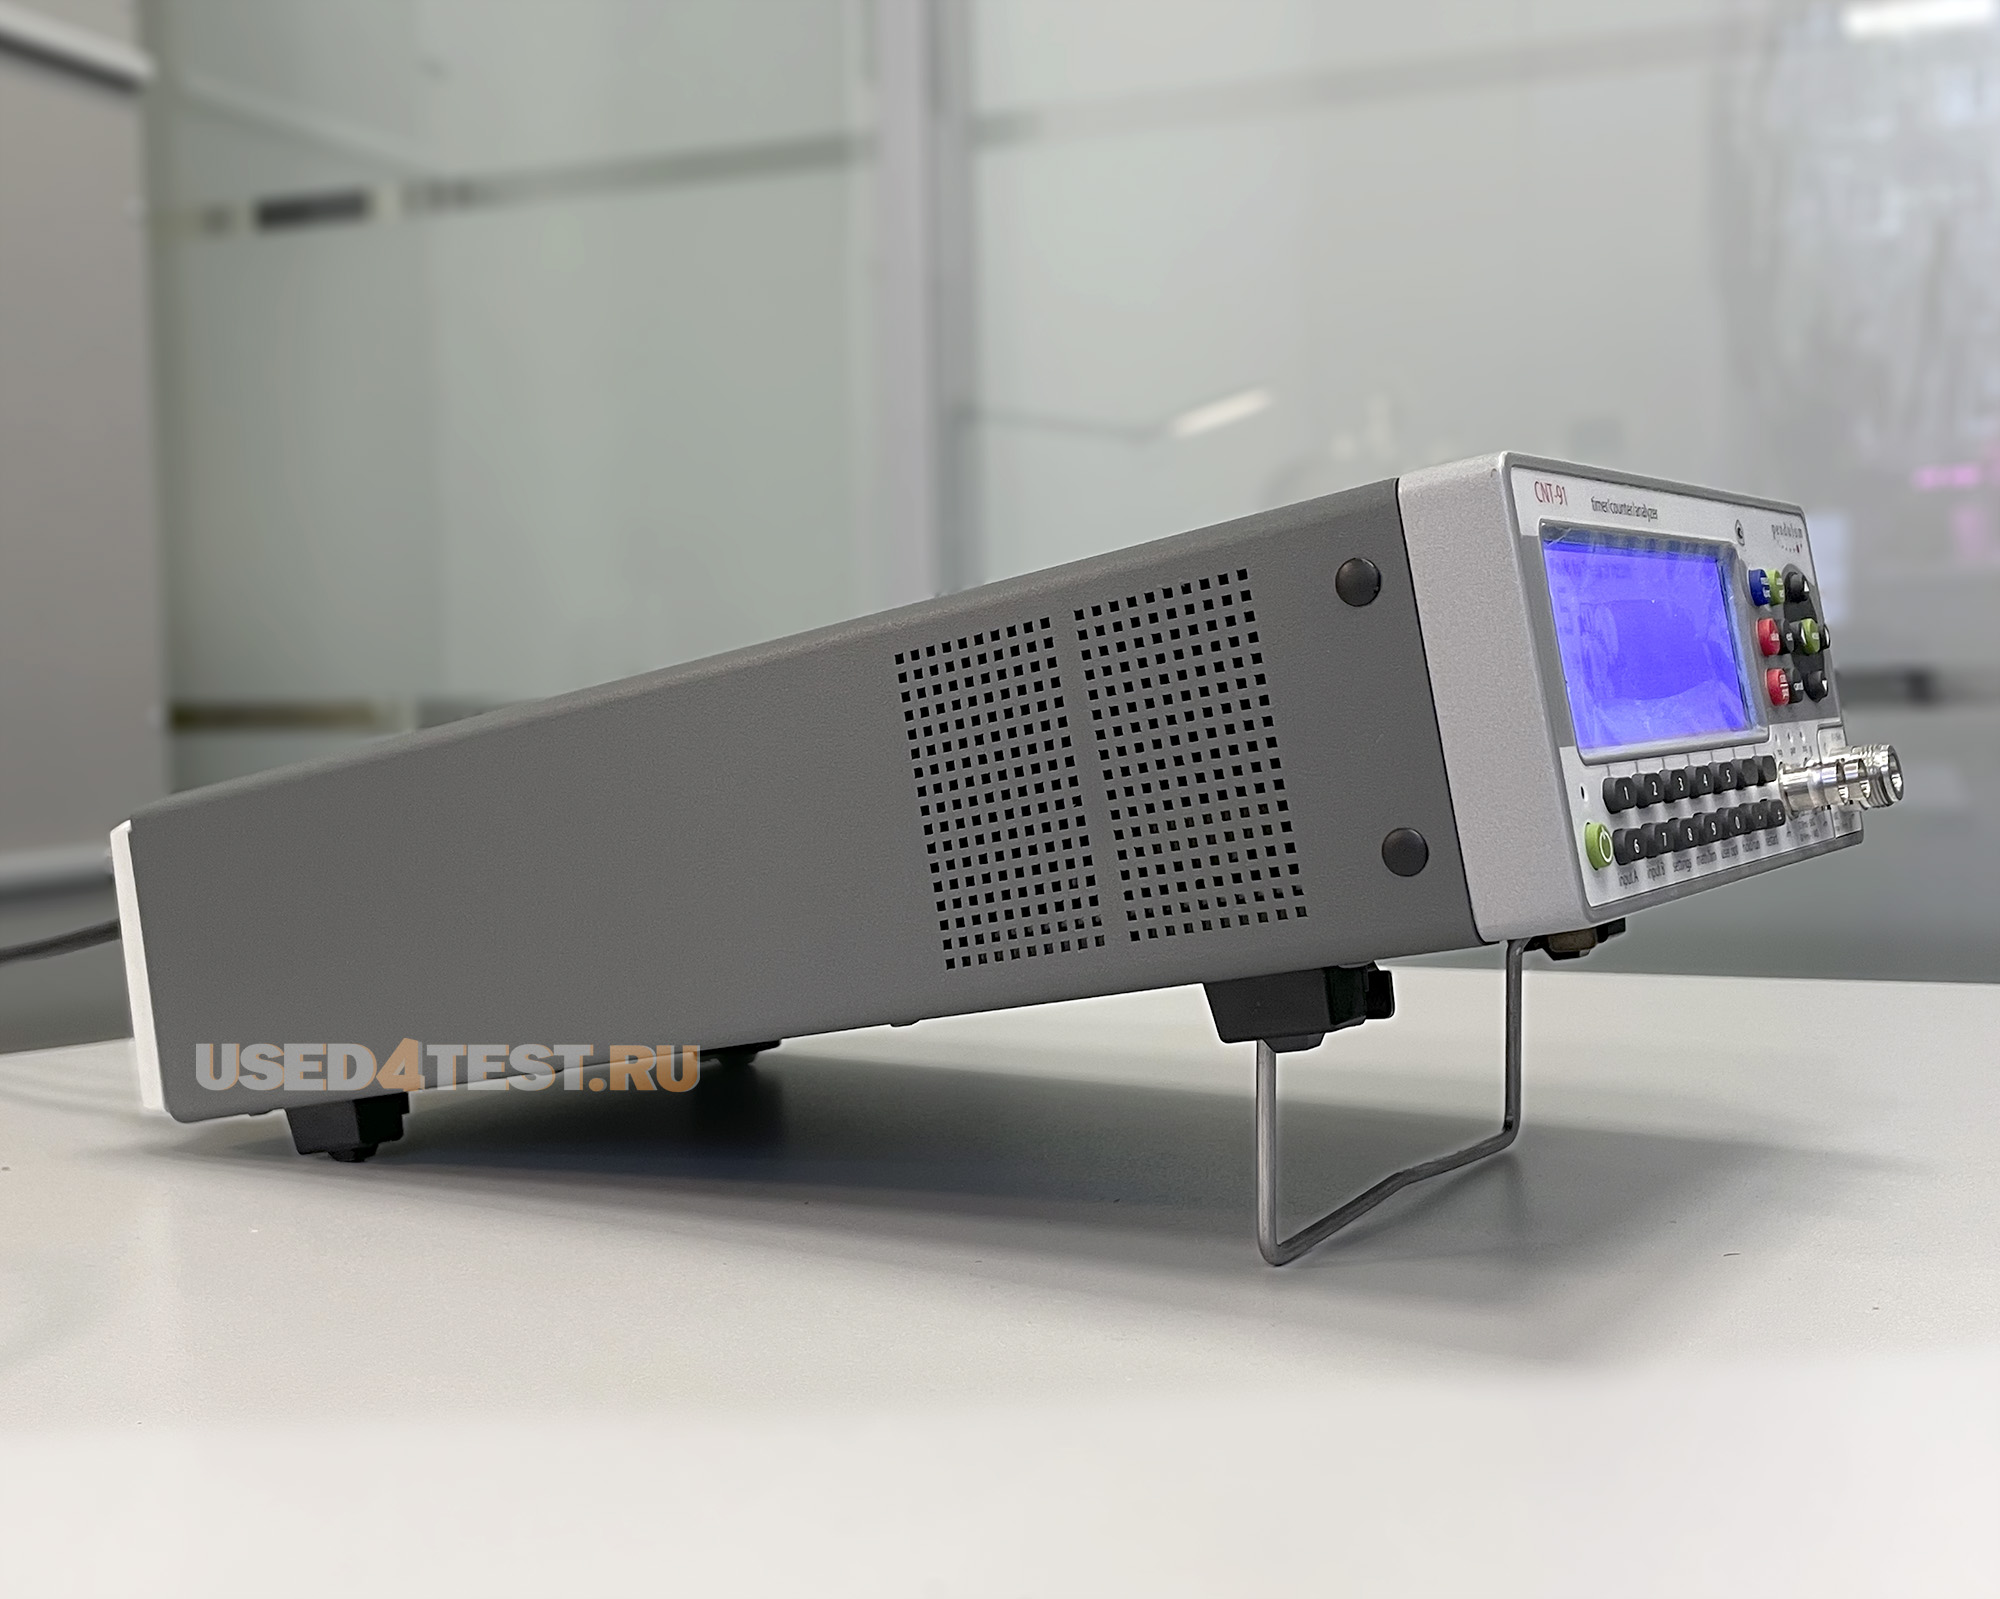 Частотомер Pendulum Instruments CNT-91с диапазоном от 0,001 Гц до 300 МГц